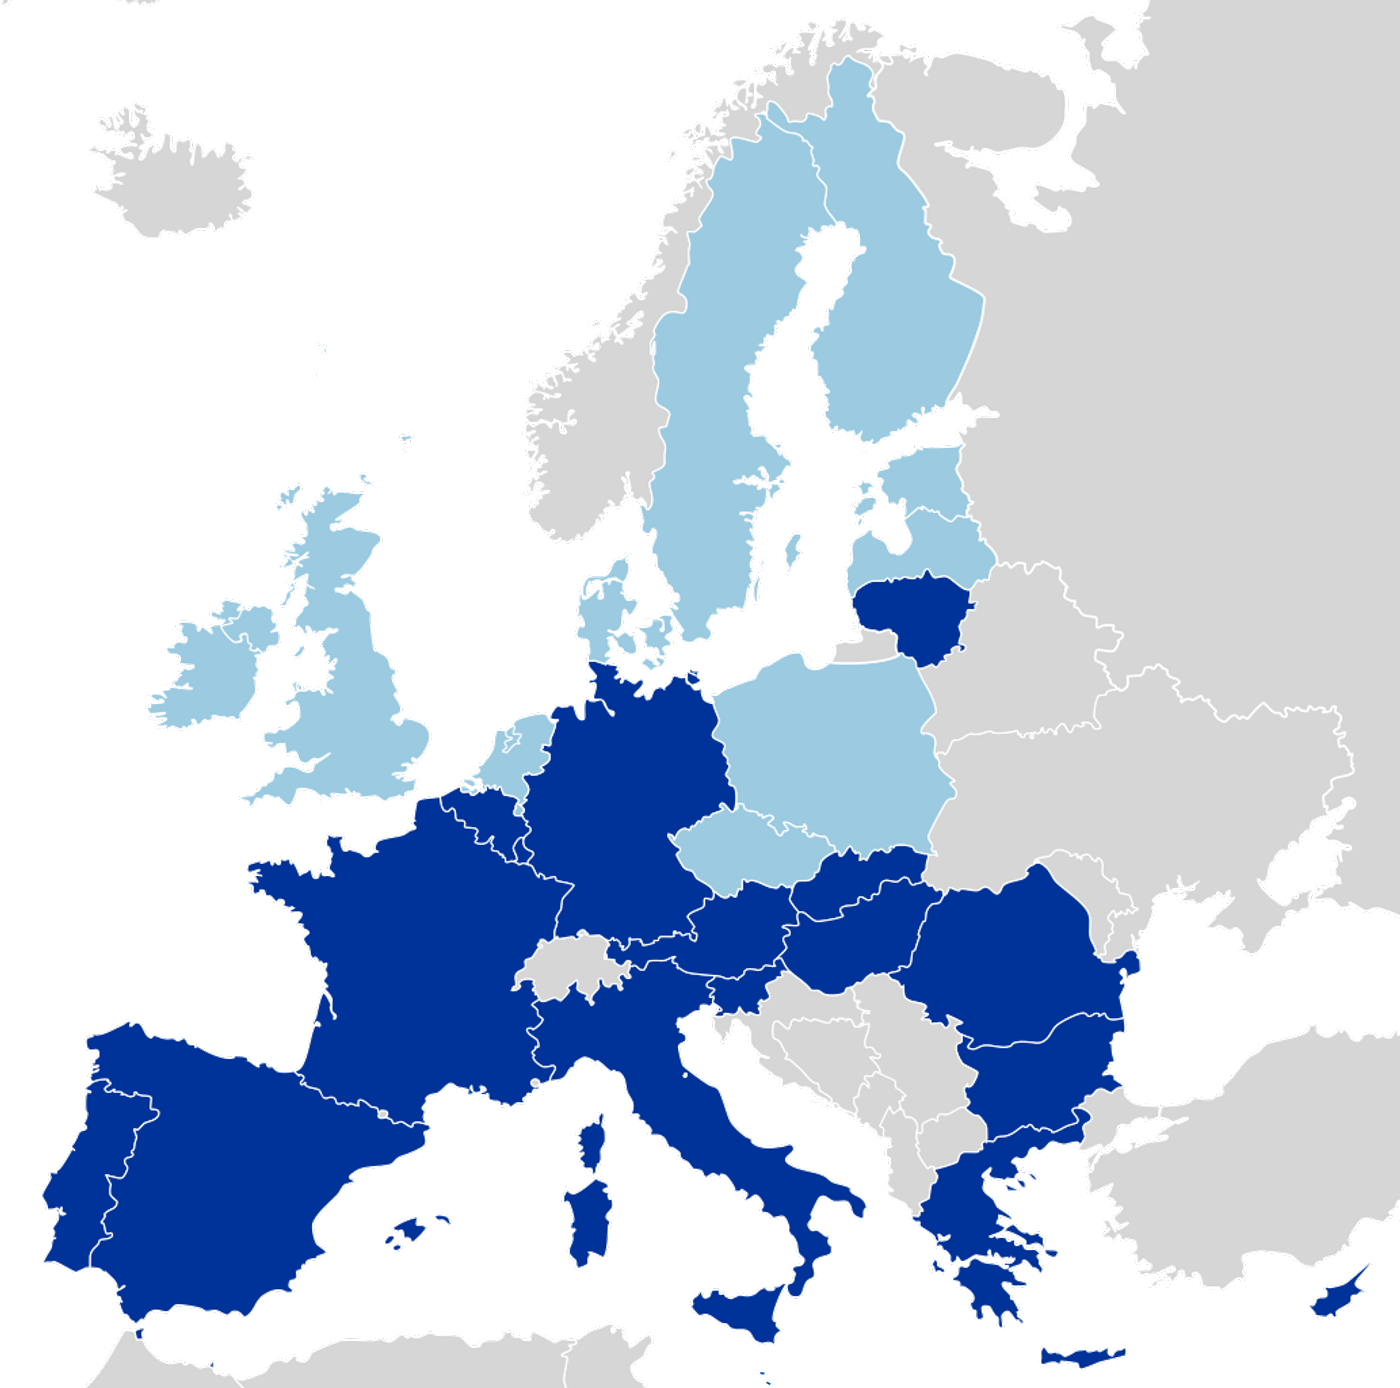 Map of EU, credit: public domain